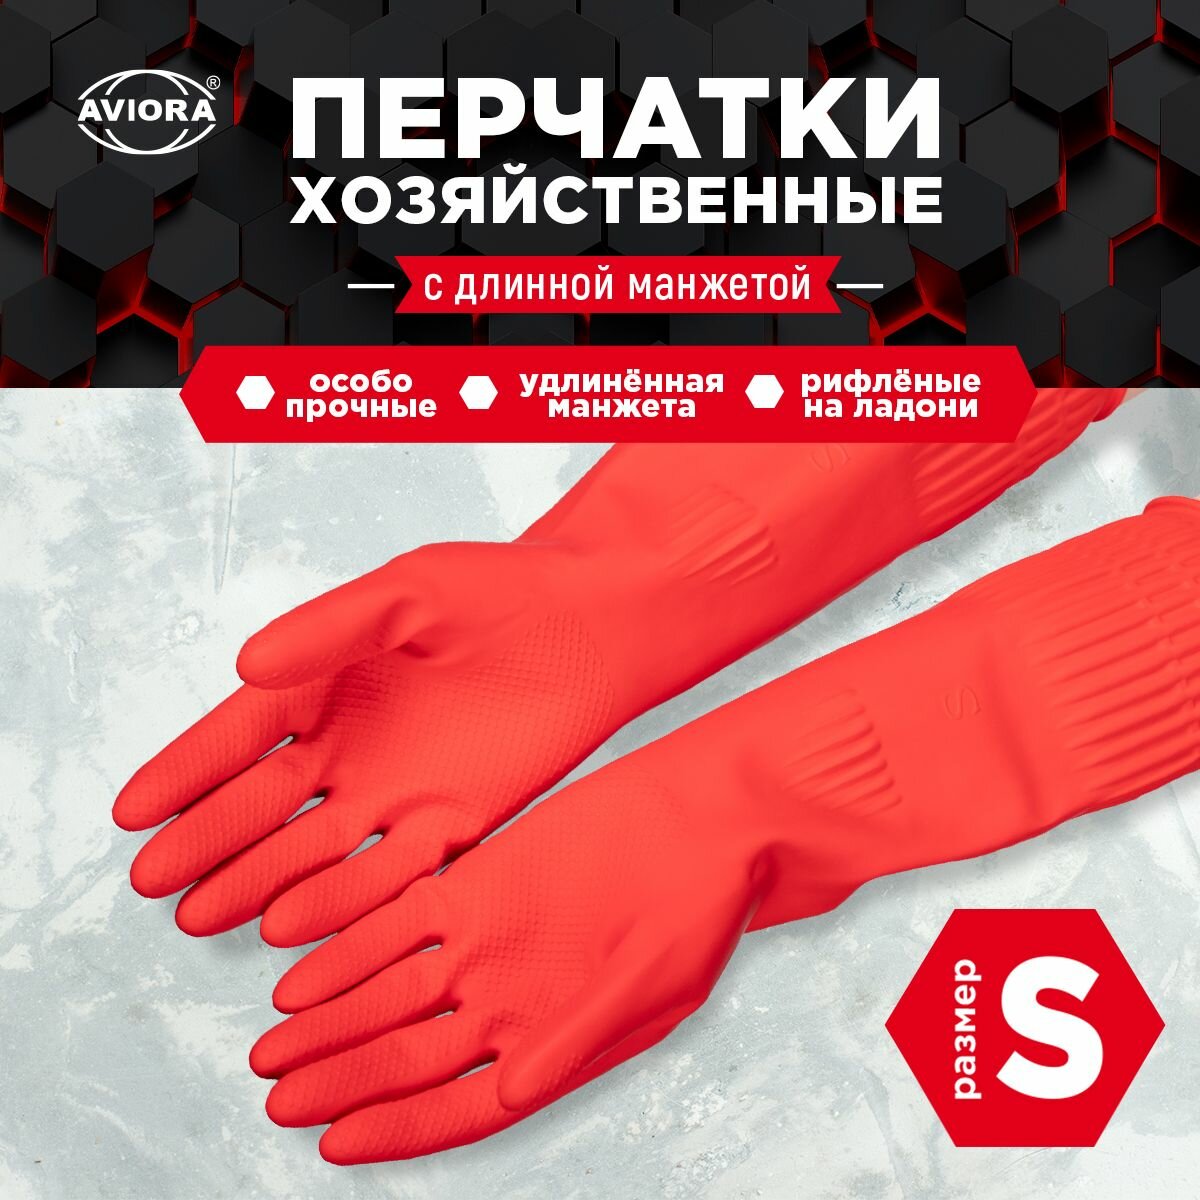 Хозяйственные перчатки резиновые с удлиненной манжетой, размер S, AVIORA (402-938)